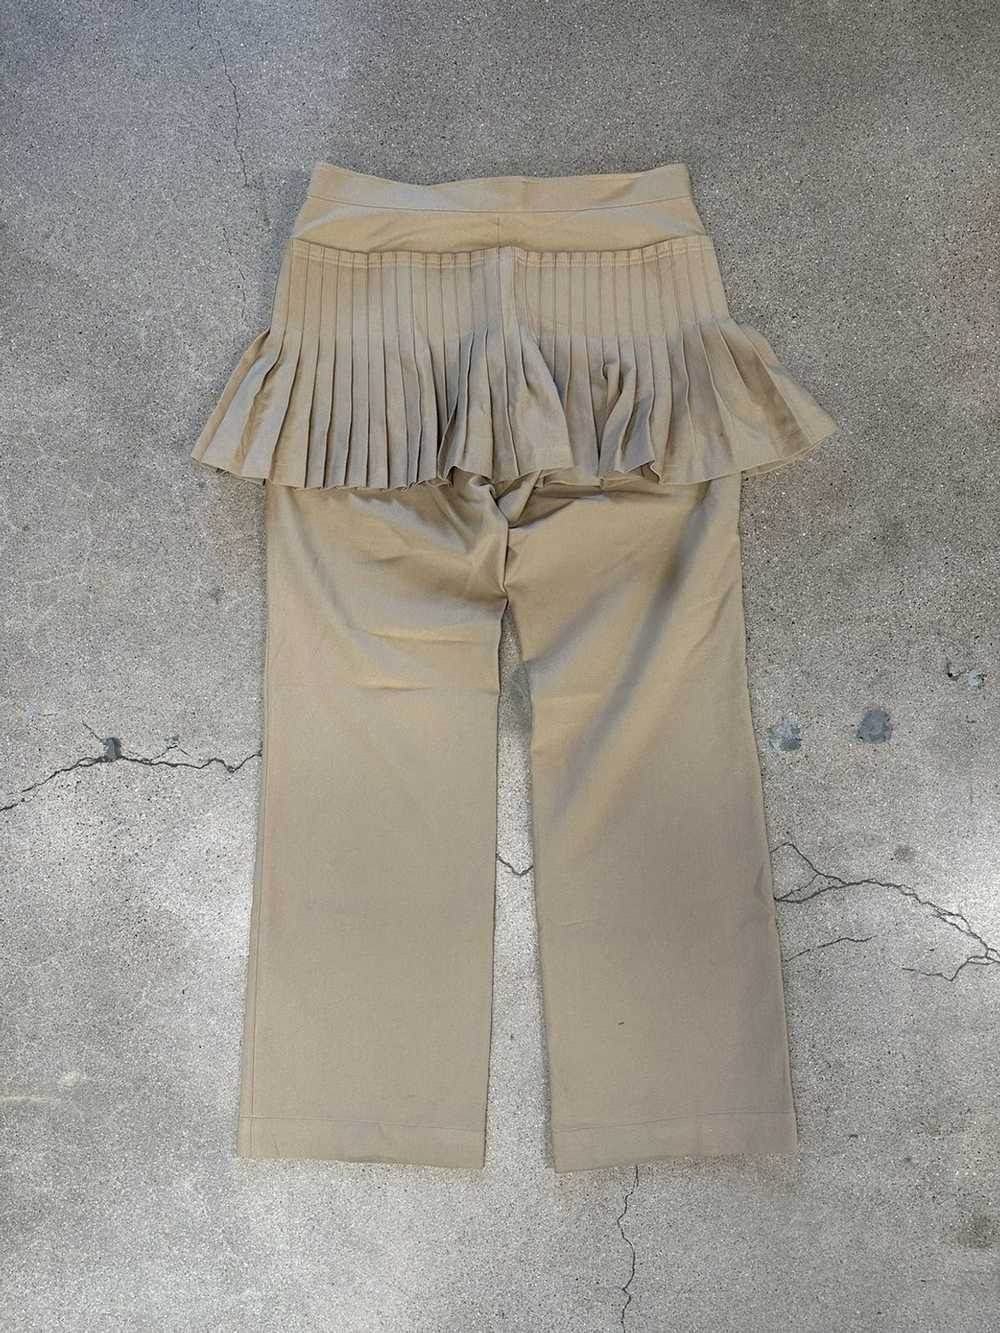 Issey Miyake Vintage Issey Miyake Skirt Pant - image 2